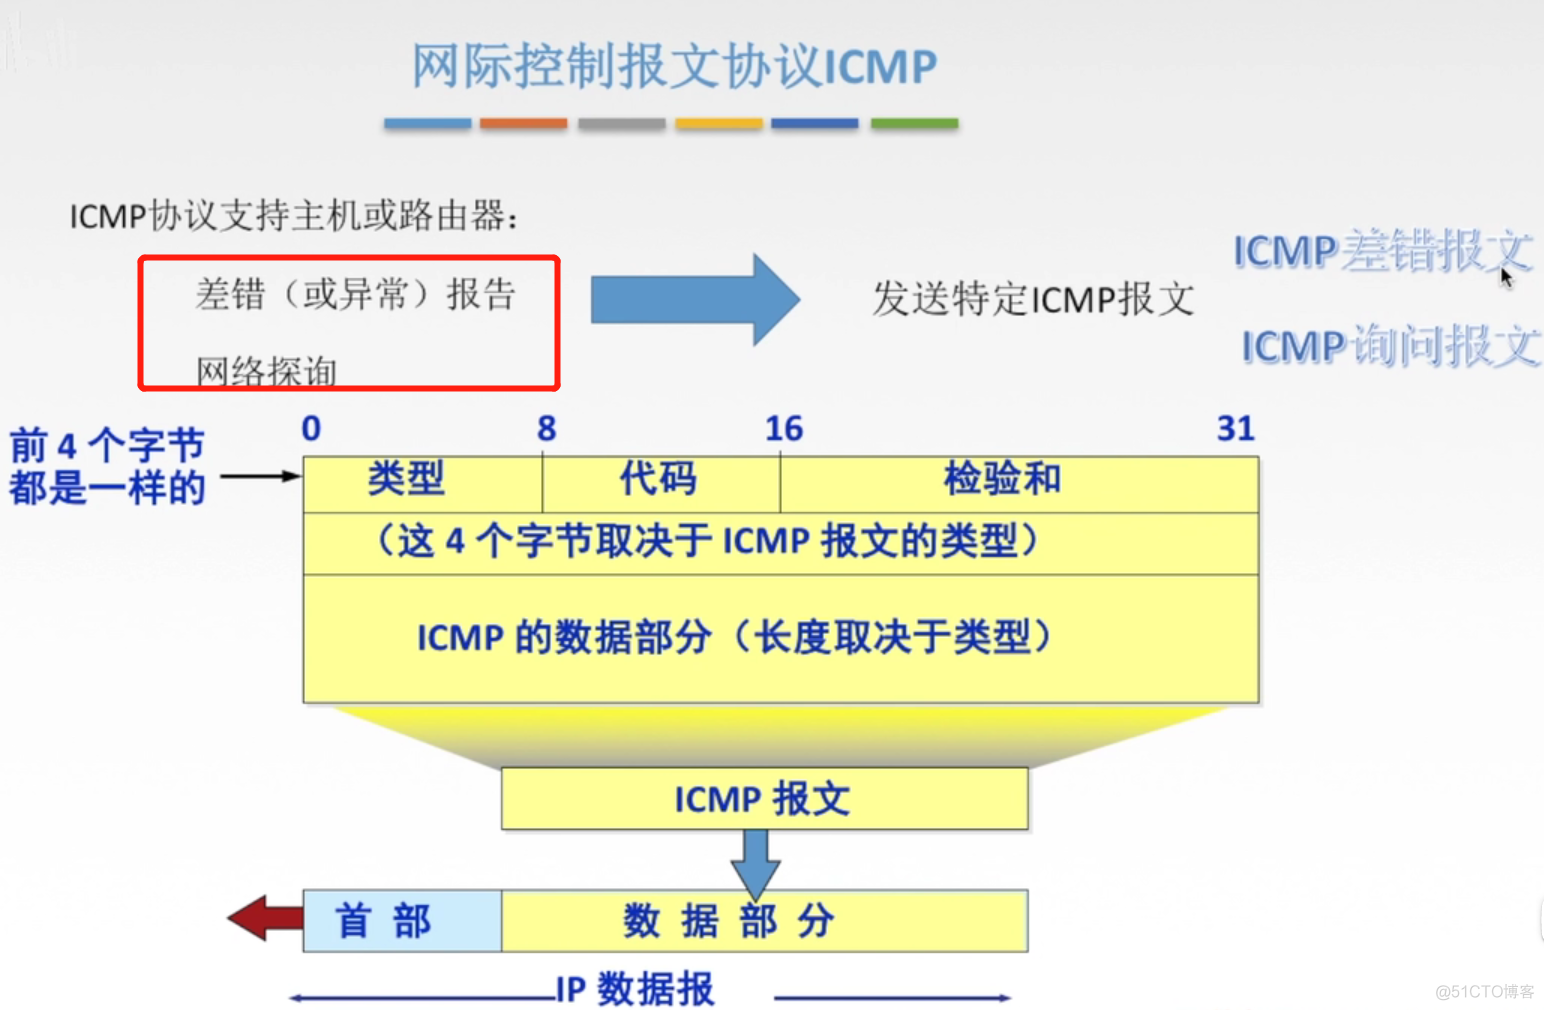 ARP、DHCP和ICMP协议_数据链路层_04